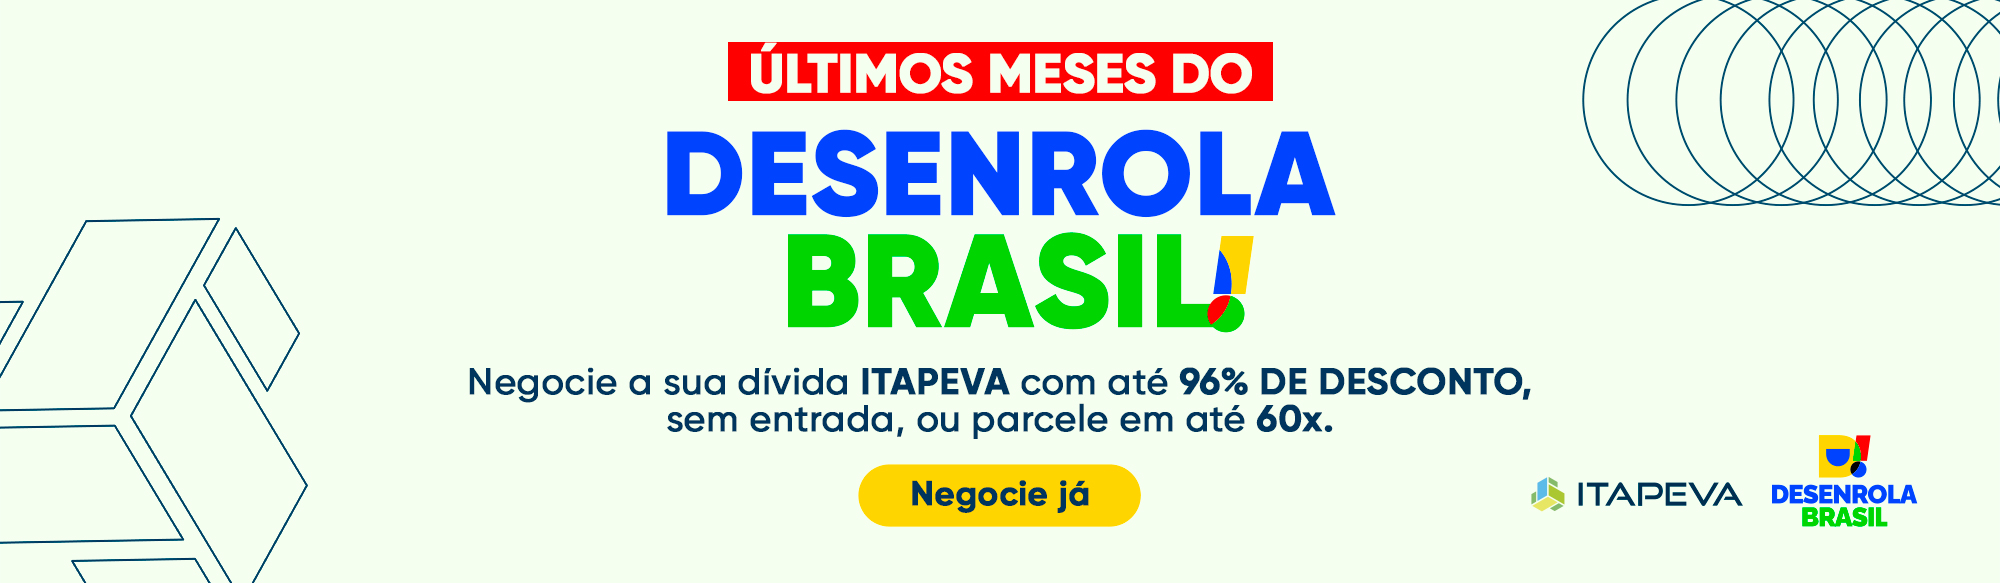 Último meses do Desenrola Brasil. Negocie sua dívida Itapeva com até 96% de desconto, sem entrada, ou parcele em até 60x.